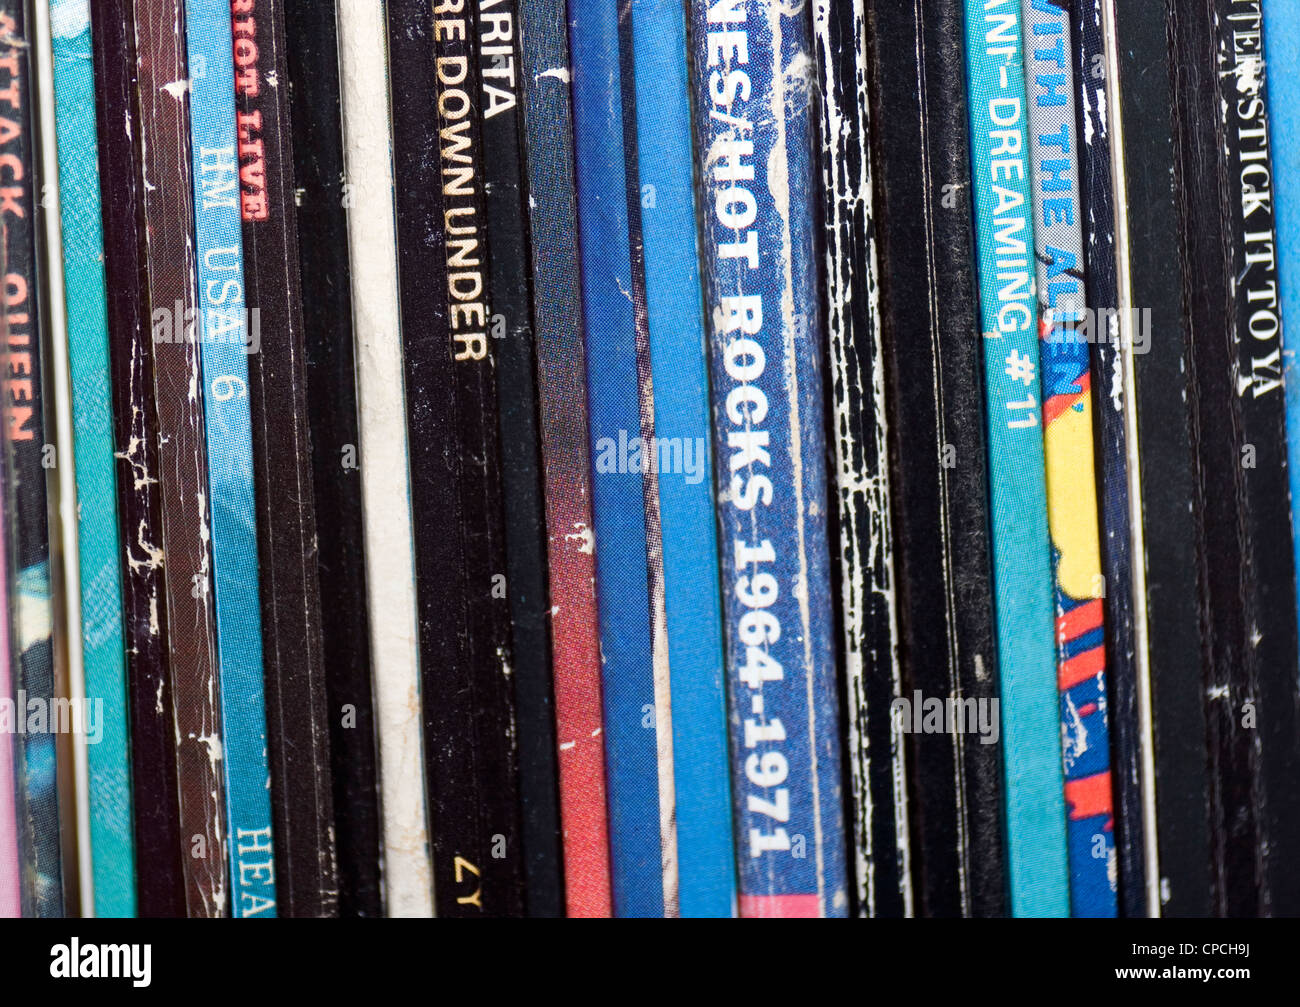 Spines of vinyl lp records Stock Photo